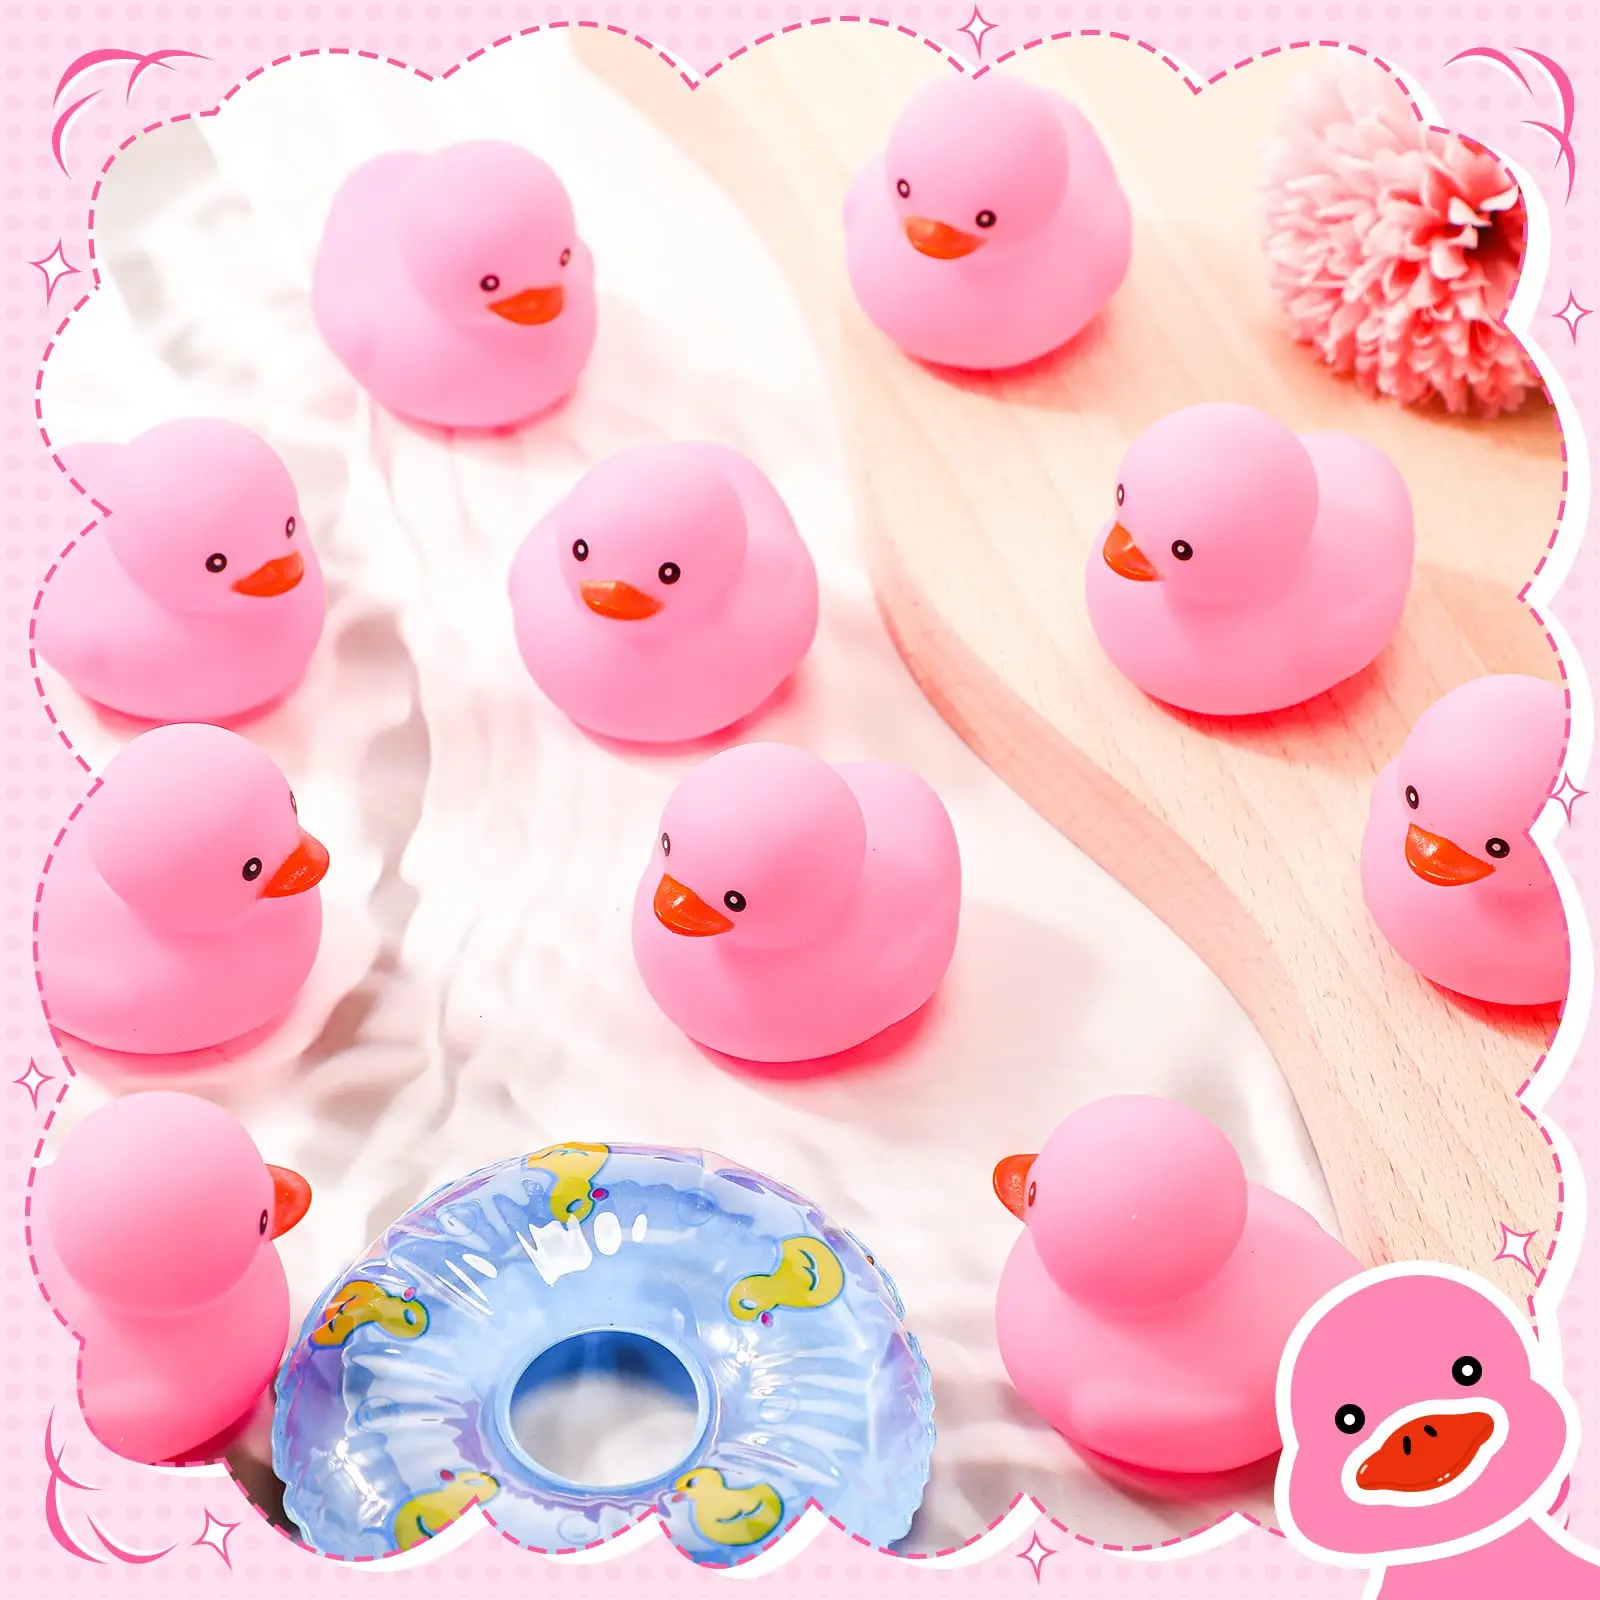 48 szt. 2 Cal Mini gumka kaczki dla dzieci impreza dla dzieci preferuje masowe kaczki do kąpieli letni basen pływające zabawki gumowe kaczki urodziny